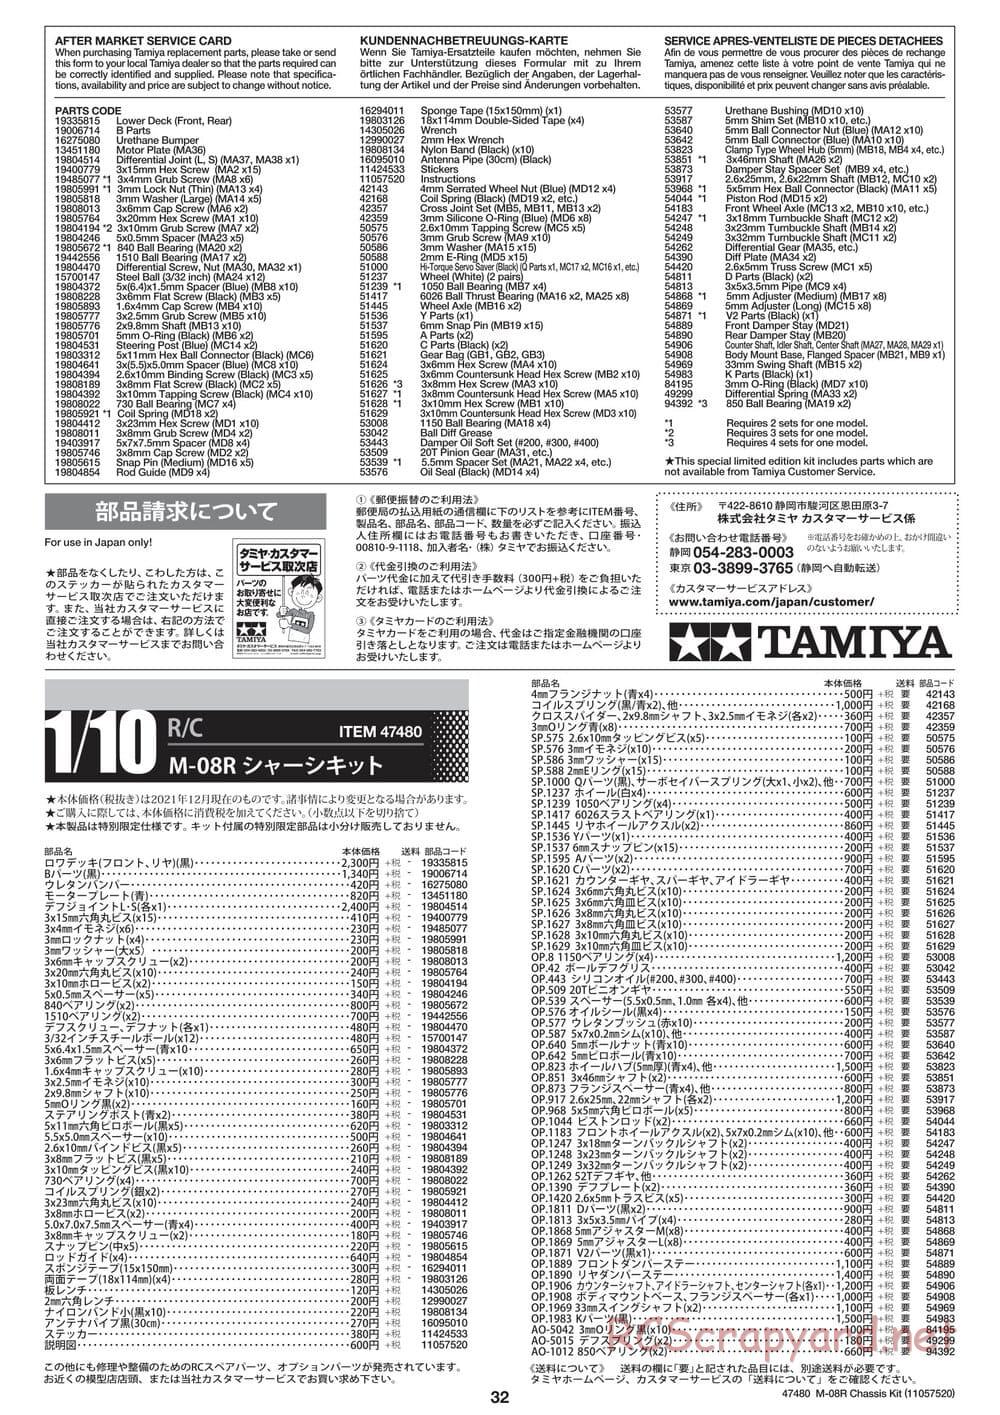 Tamiya - M-08R Chassis - Manual - Page 32